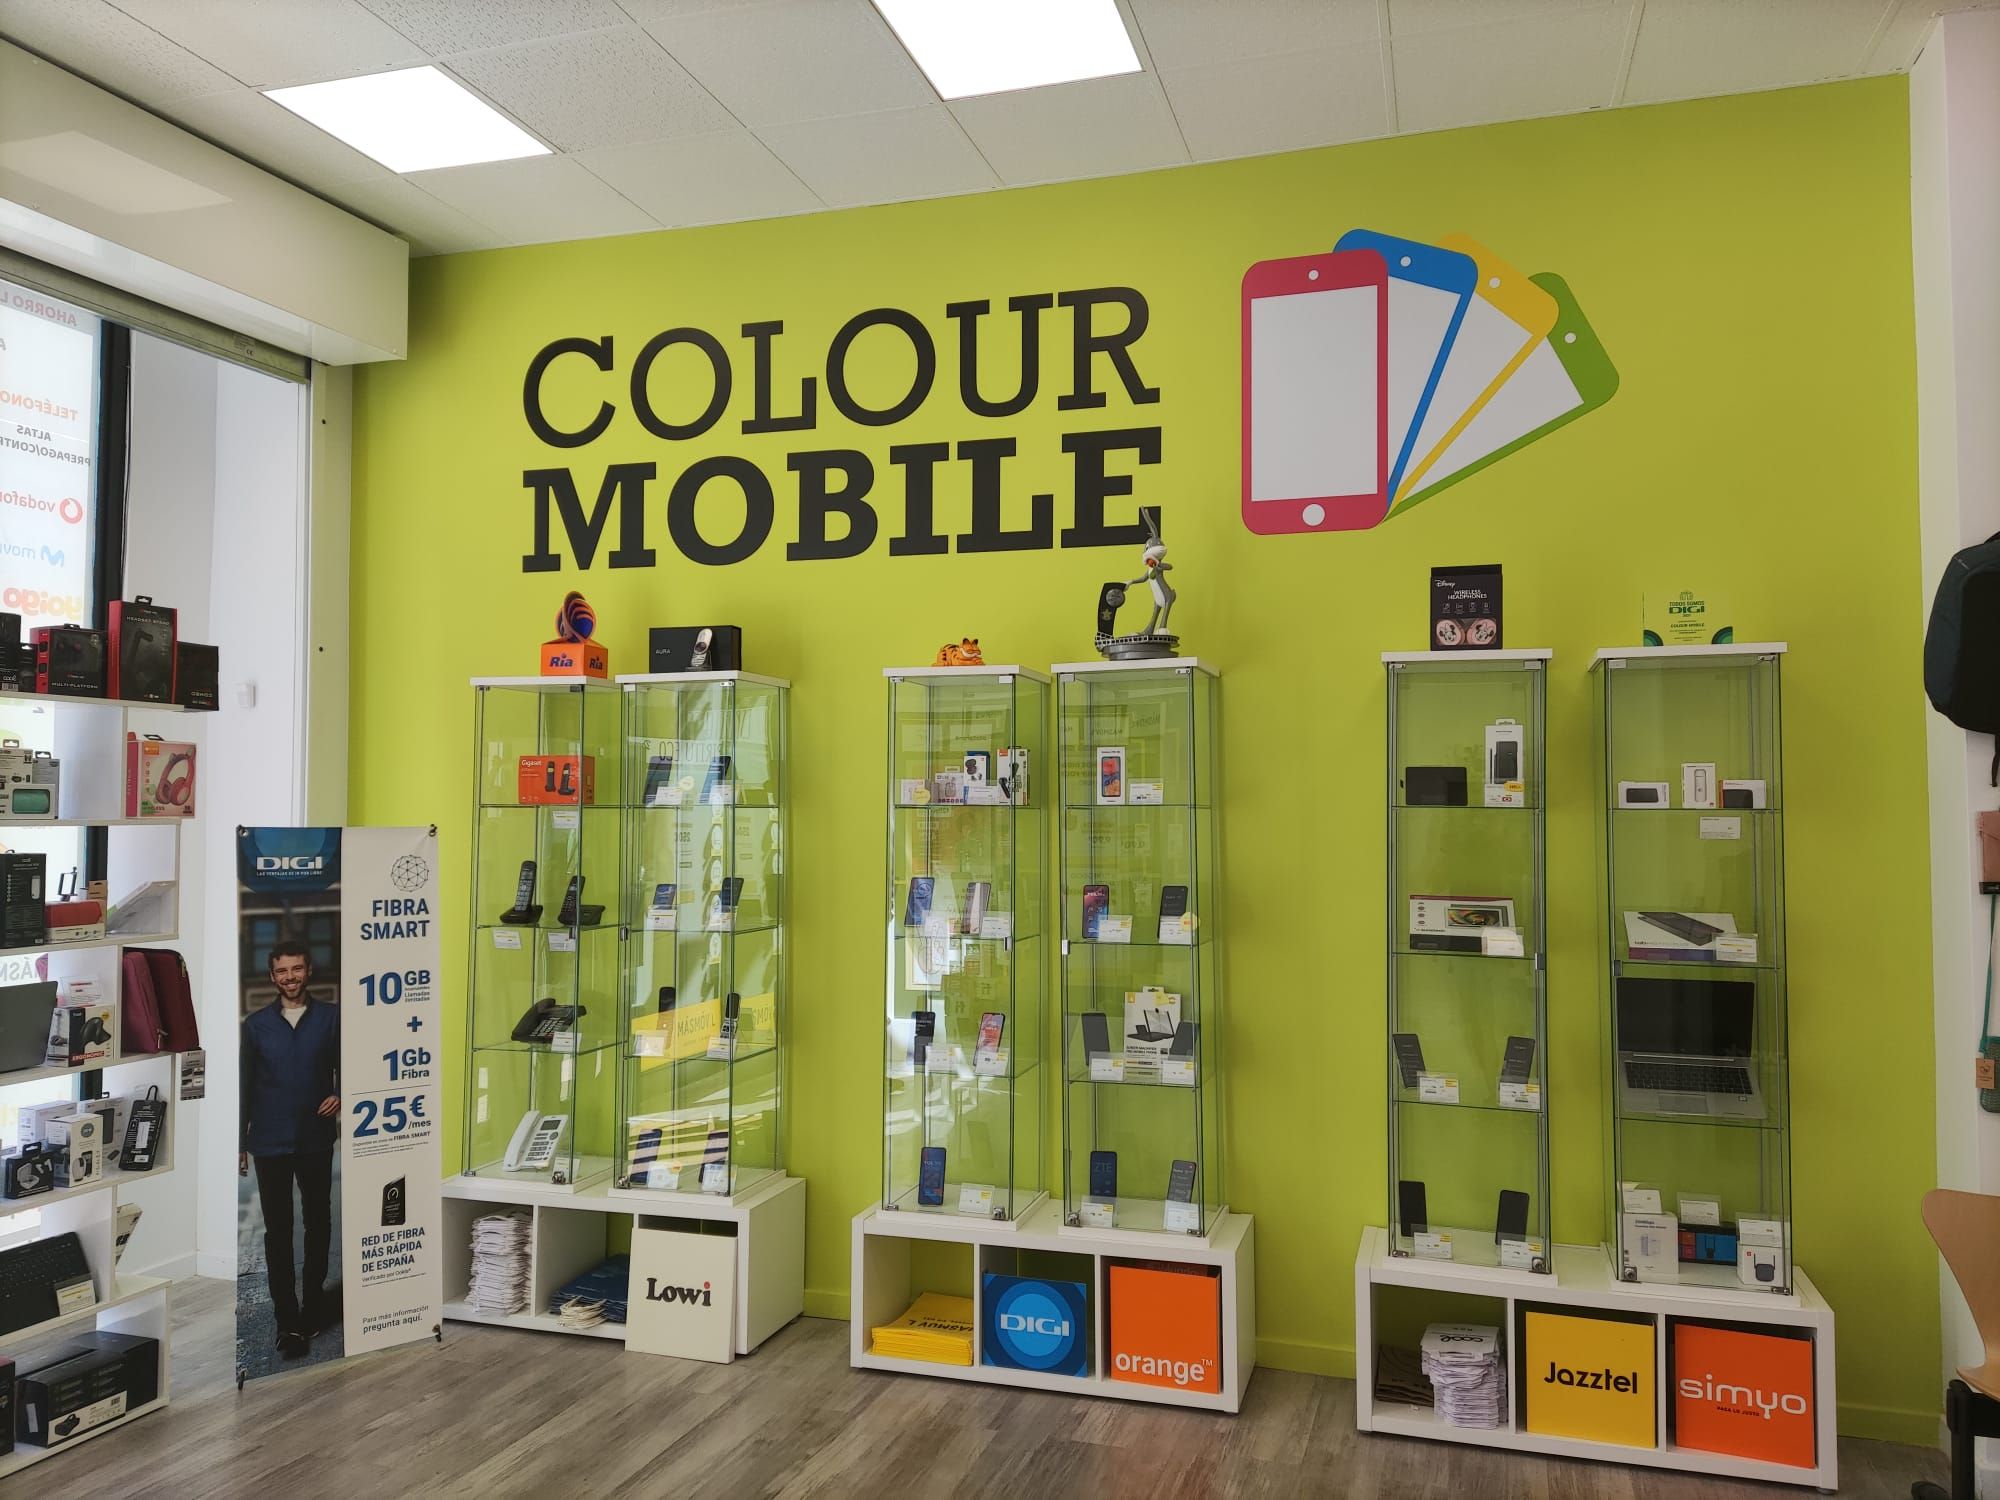 Foto 15 de Telefonía fija y móvil en Móstoles | Colour Mobile Móstoles